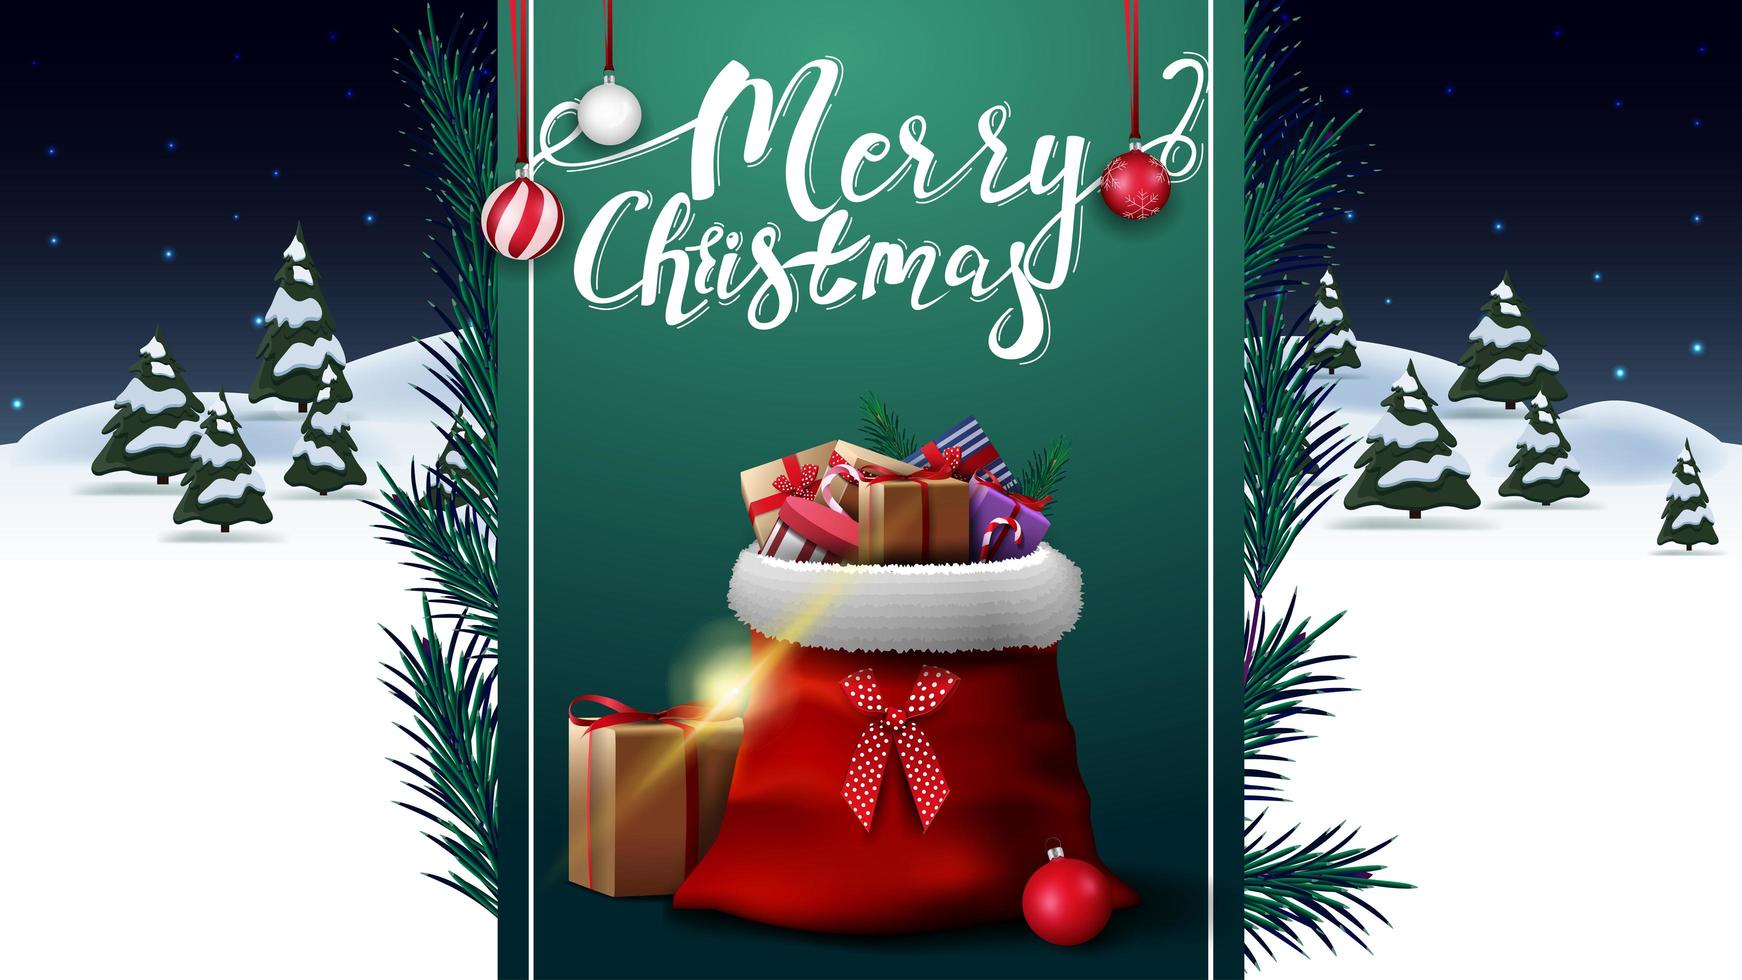 Feliz Natal, cartão postal de saudação com paisagem de inverno à noite e fita vertical verde com bolsa de Papai Noel com presentes vetor